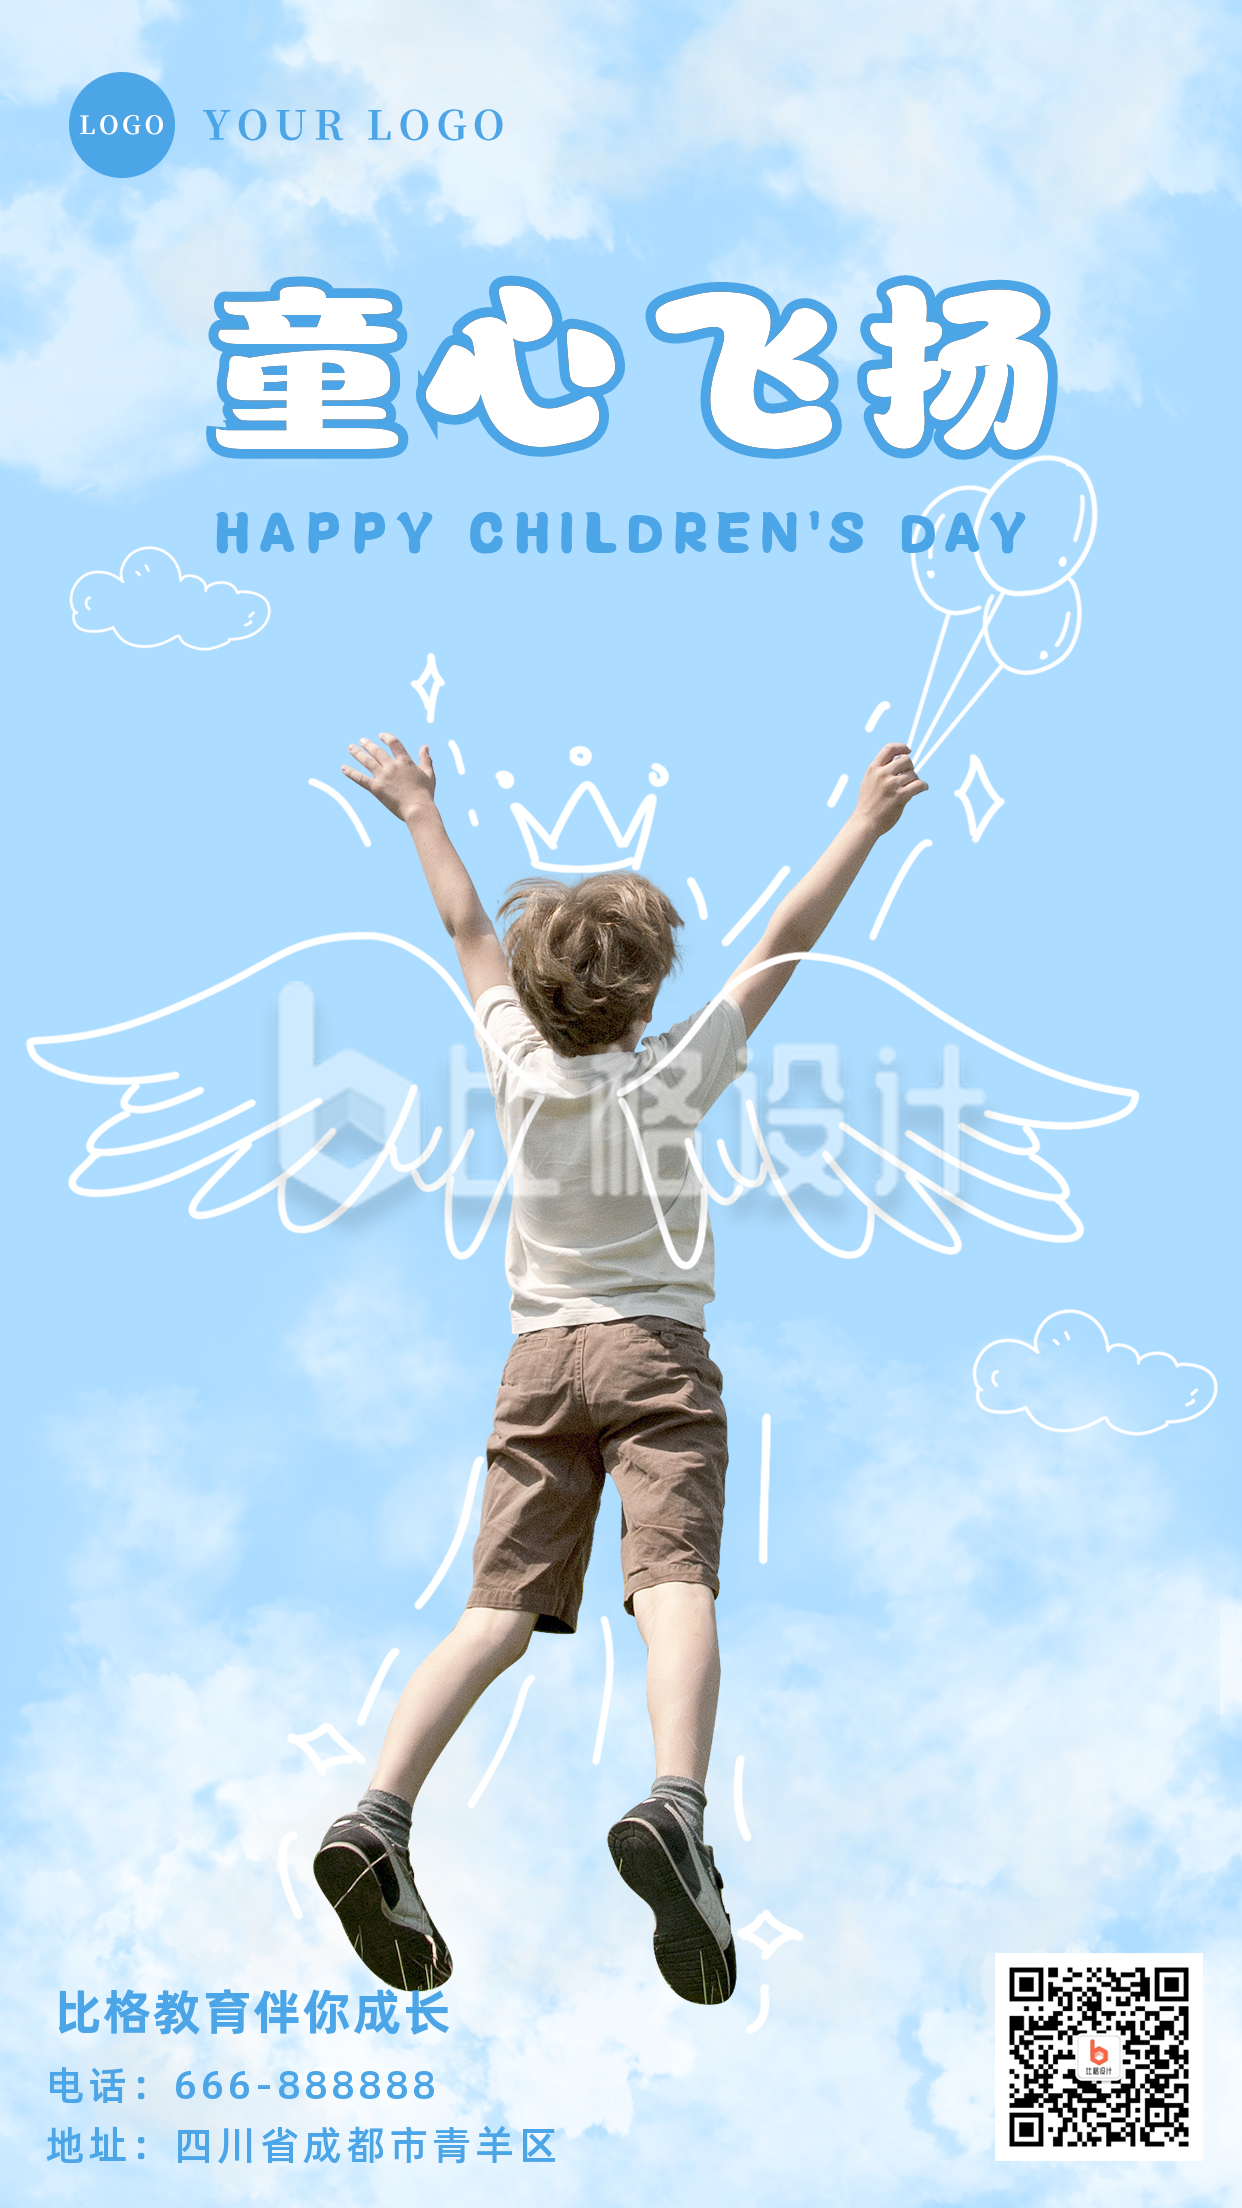 蓝色天空简约实景人物手绘趣味天空男孩儿童节祝福手机海报